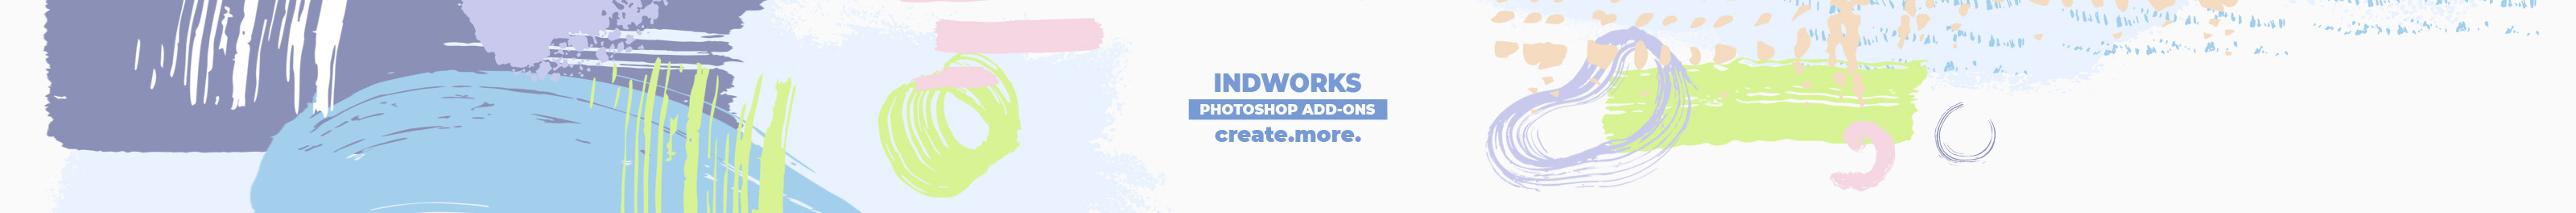 Indworks Design's profile banner